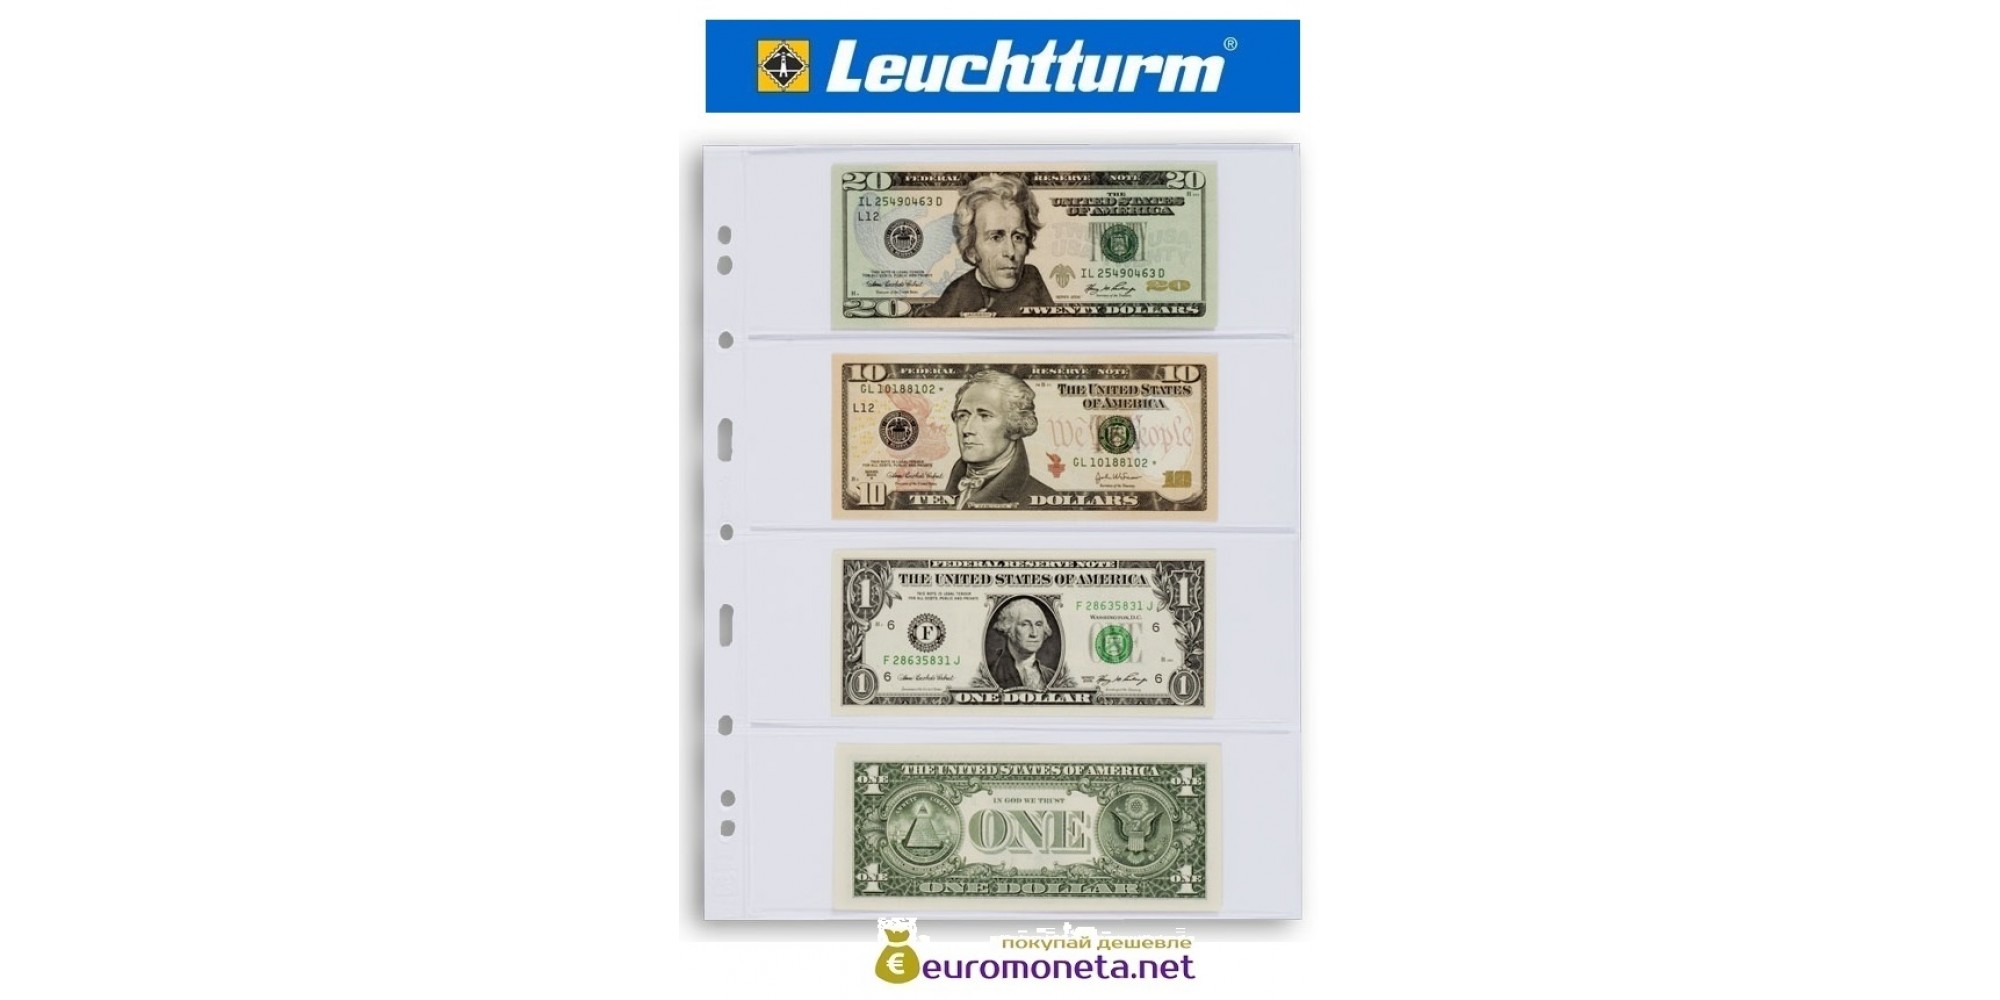 Leuchtturm GRANDE 4C лист прозрачный для банкнот А4, 4 ячейки, Германия